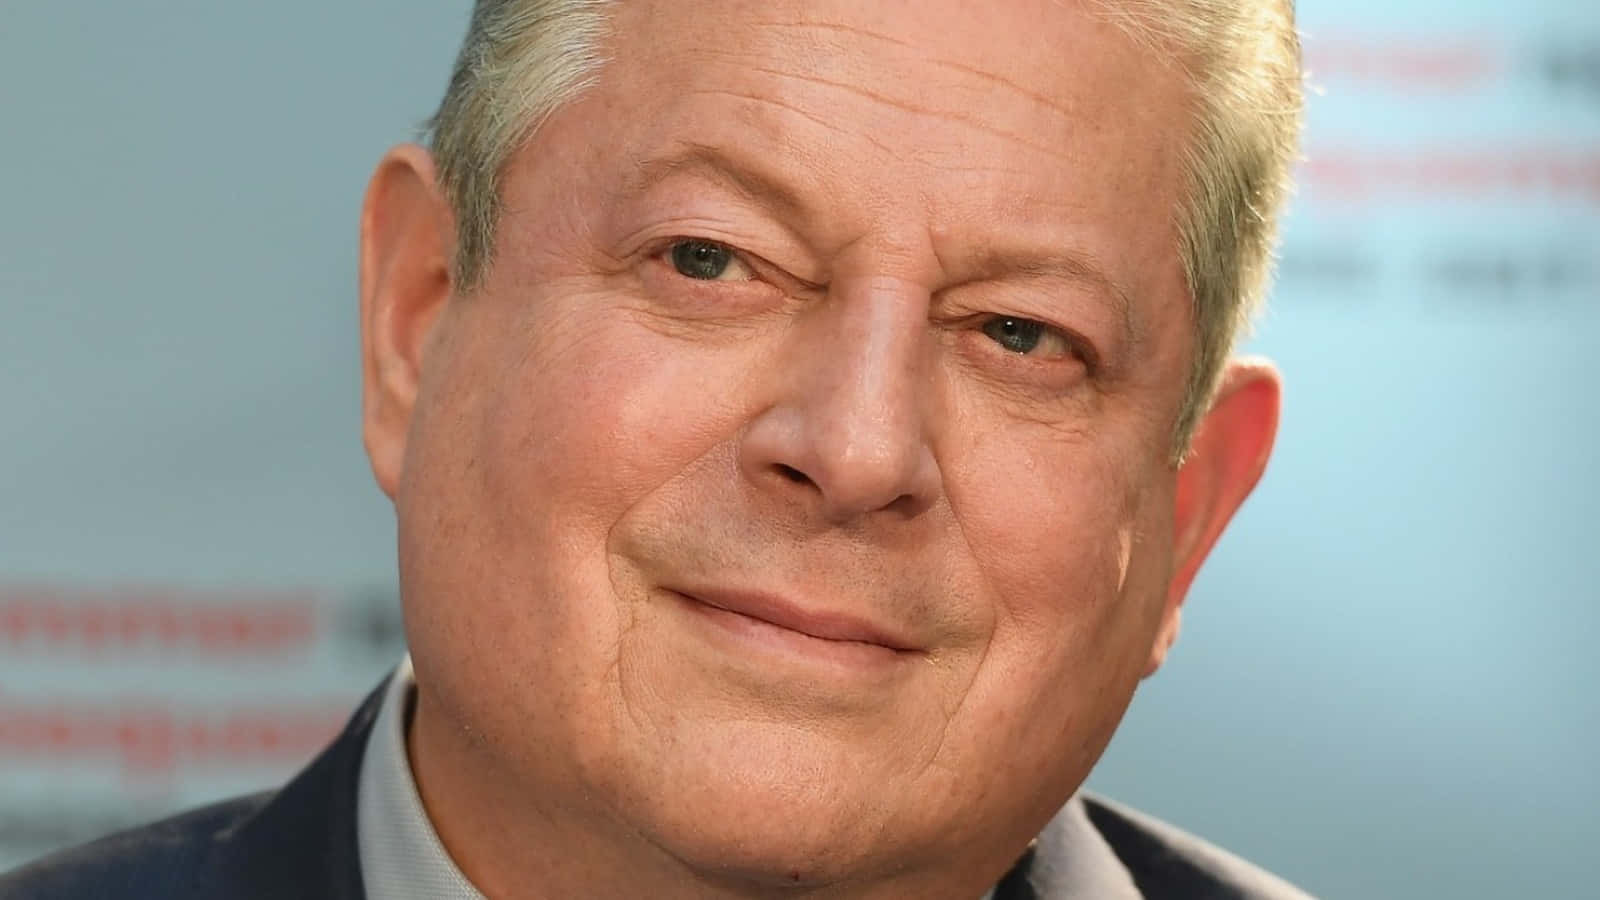 Al Gore Close-up Shot Wallpaper